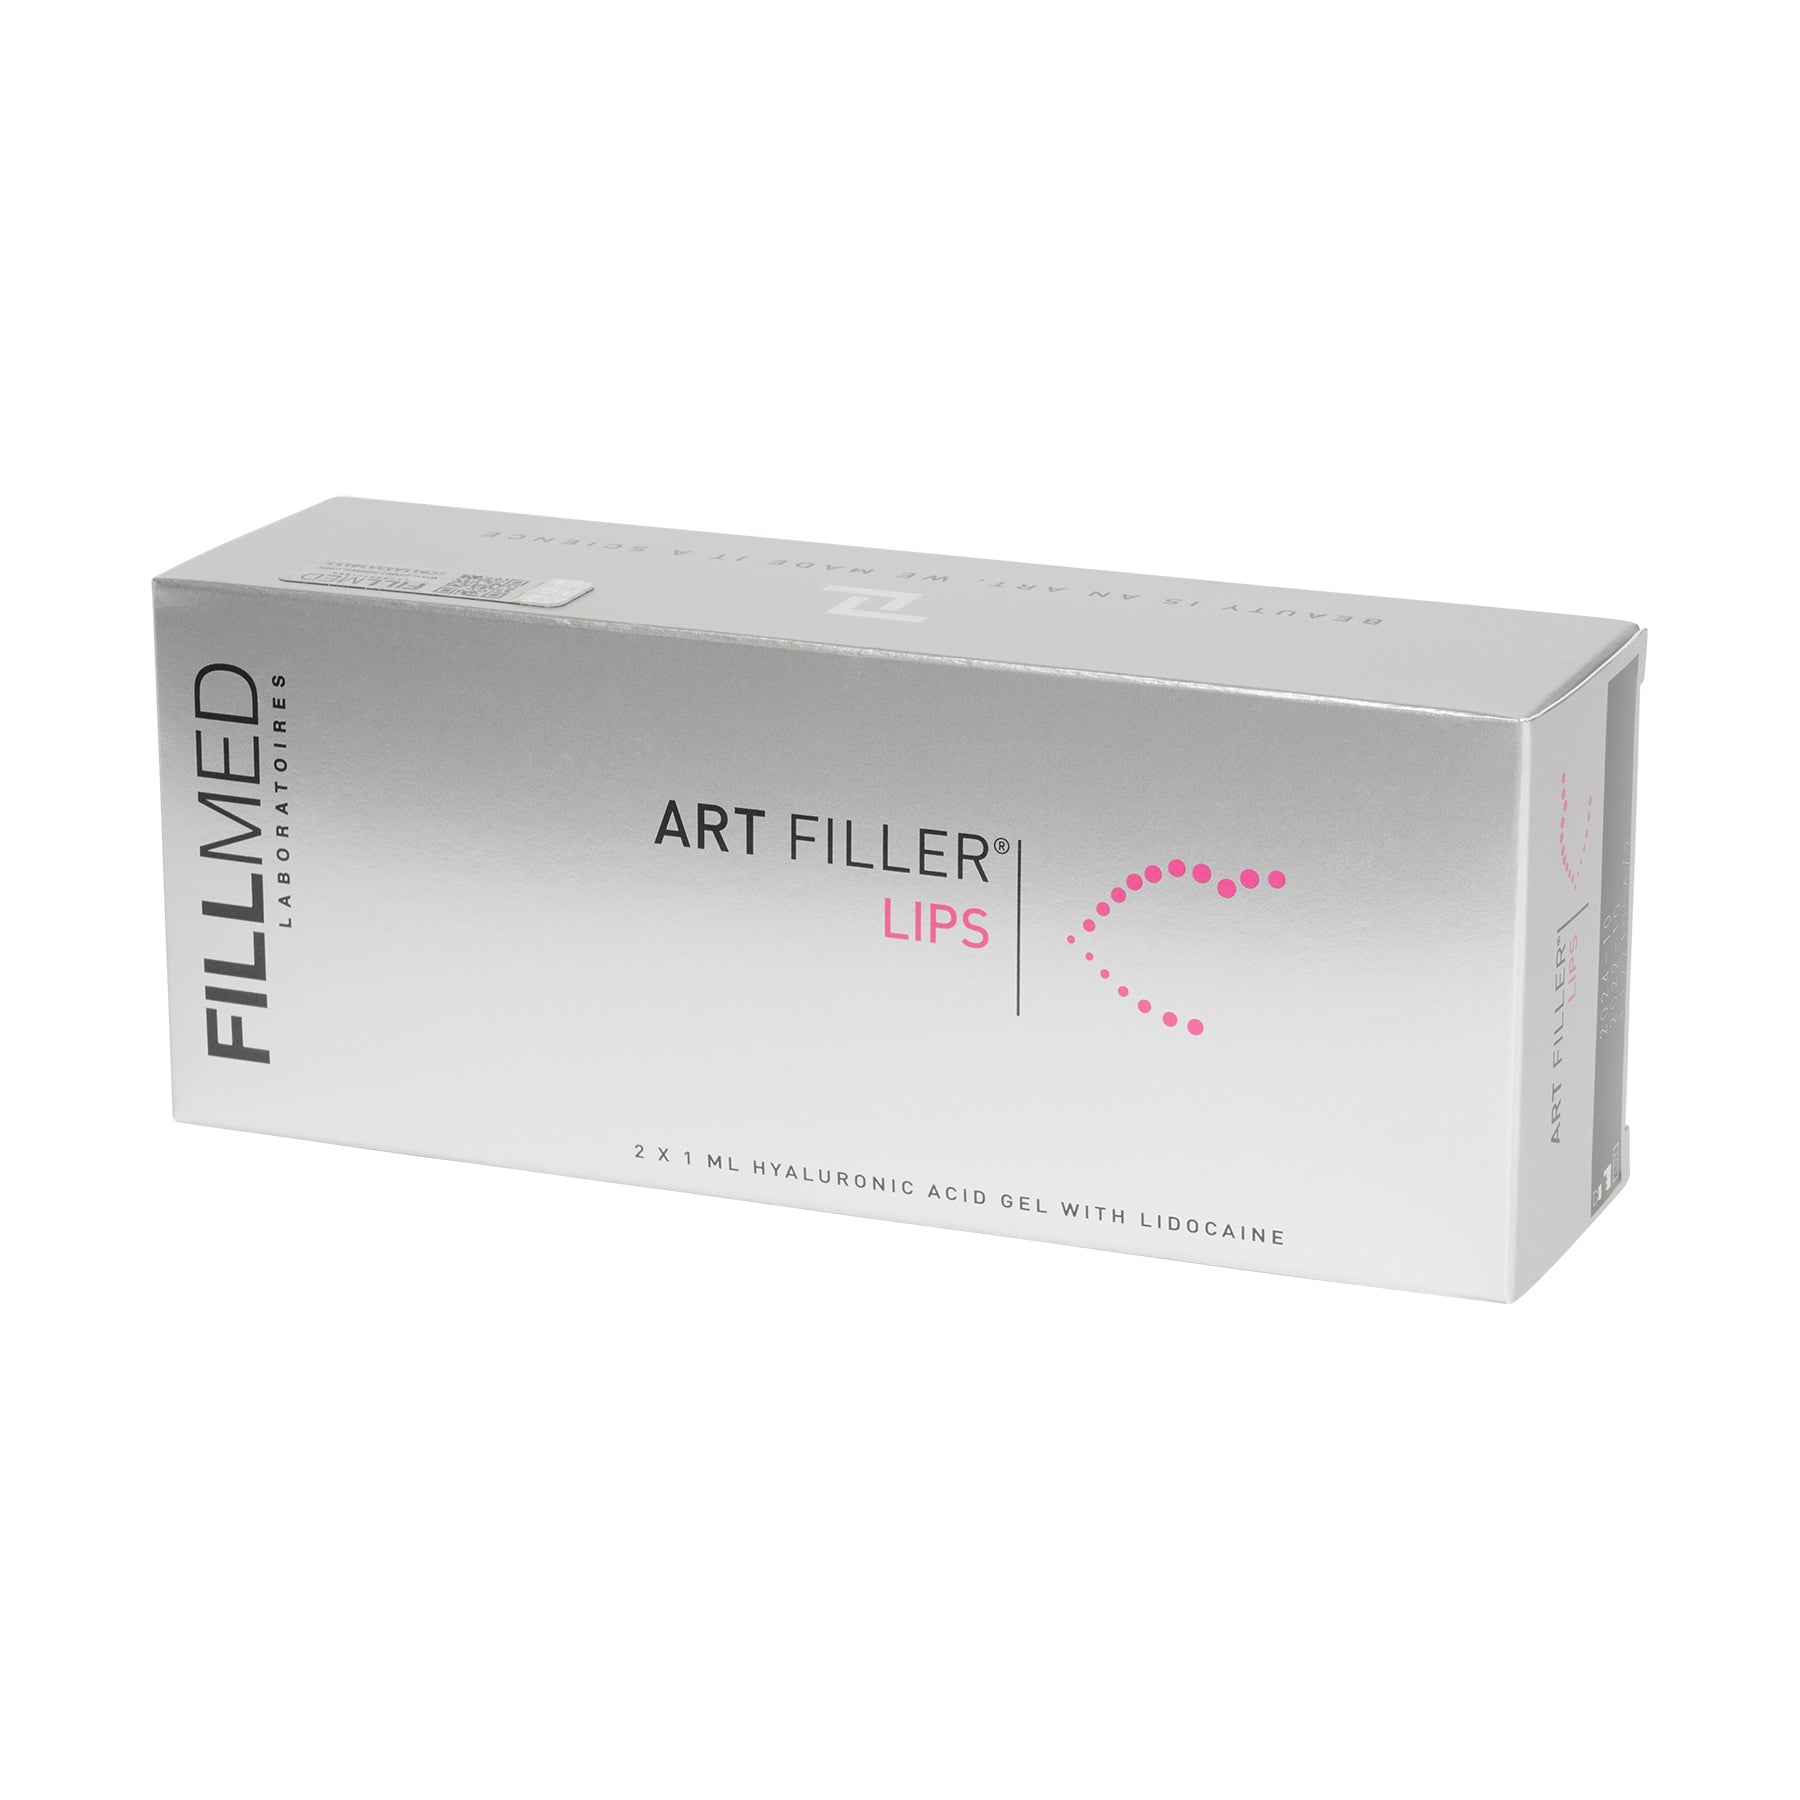 ART FILLER LIPS (2x1ml) FILLMED